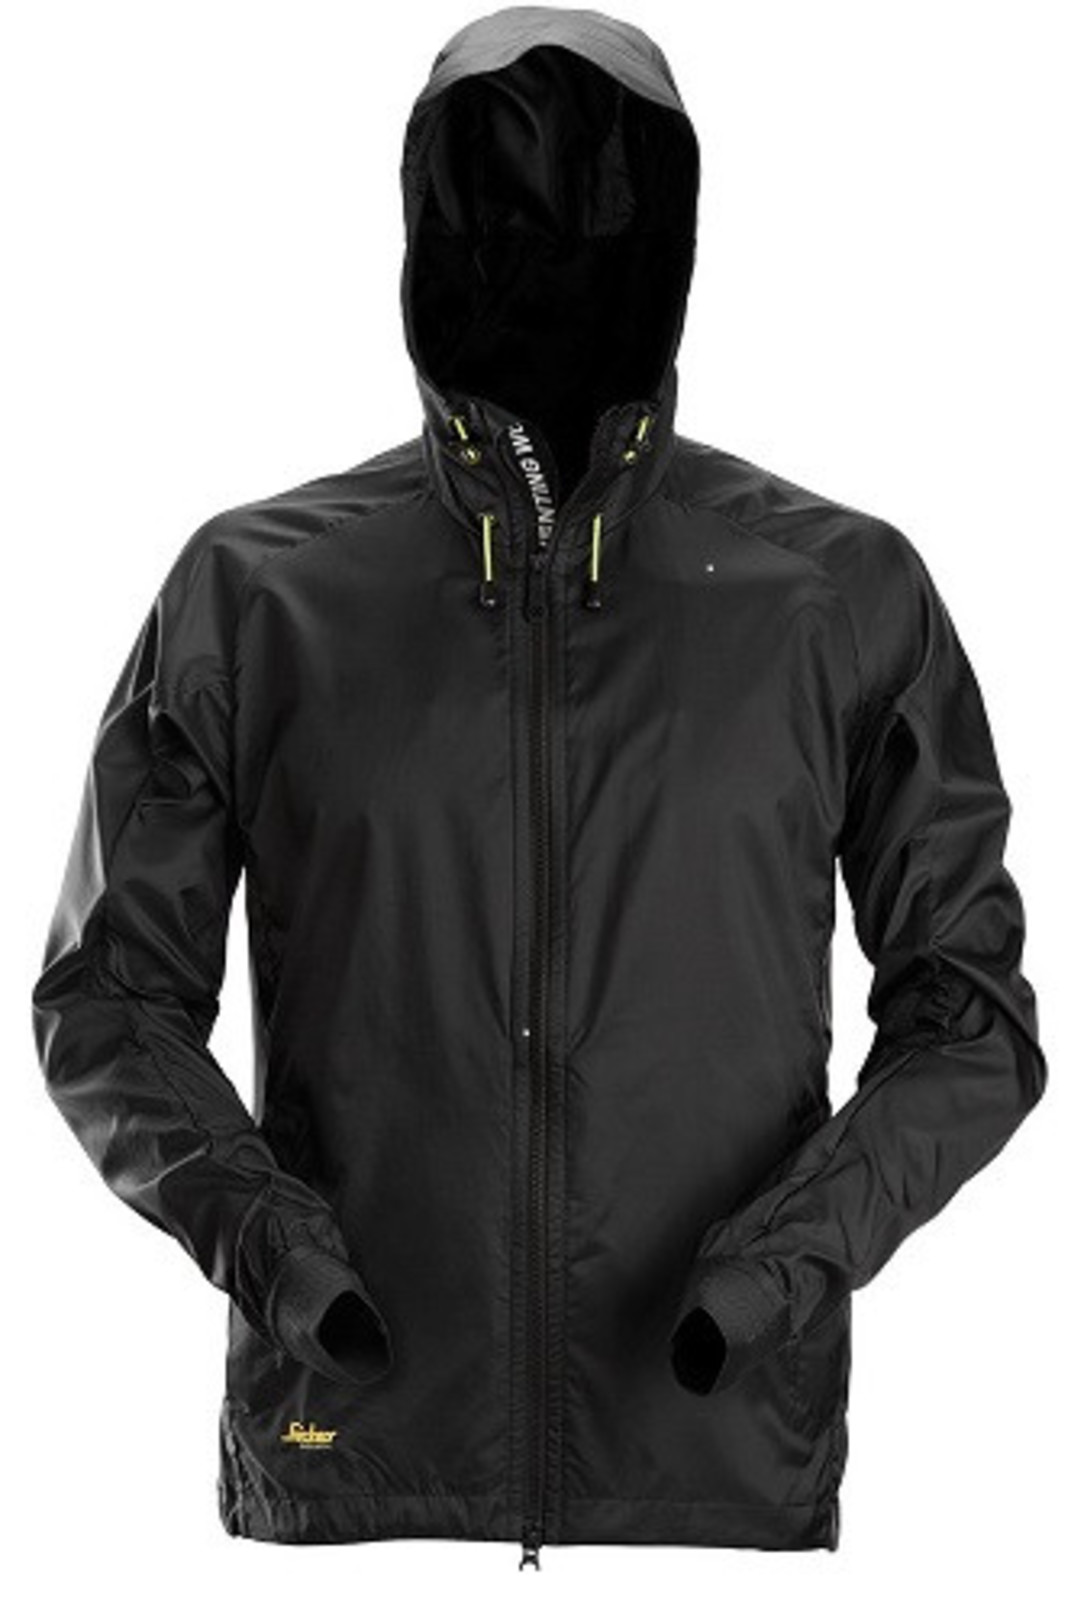 Ľahká bunda proti vetru Snickers® LiteWork Windbreaker - veľkosť: M, farba: čierna